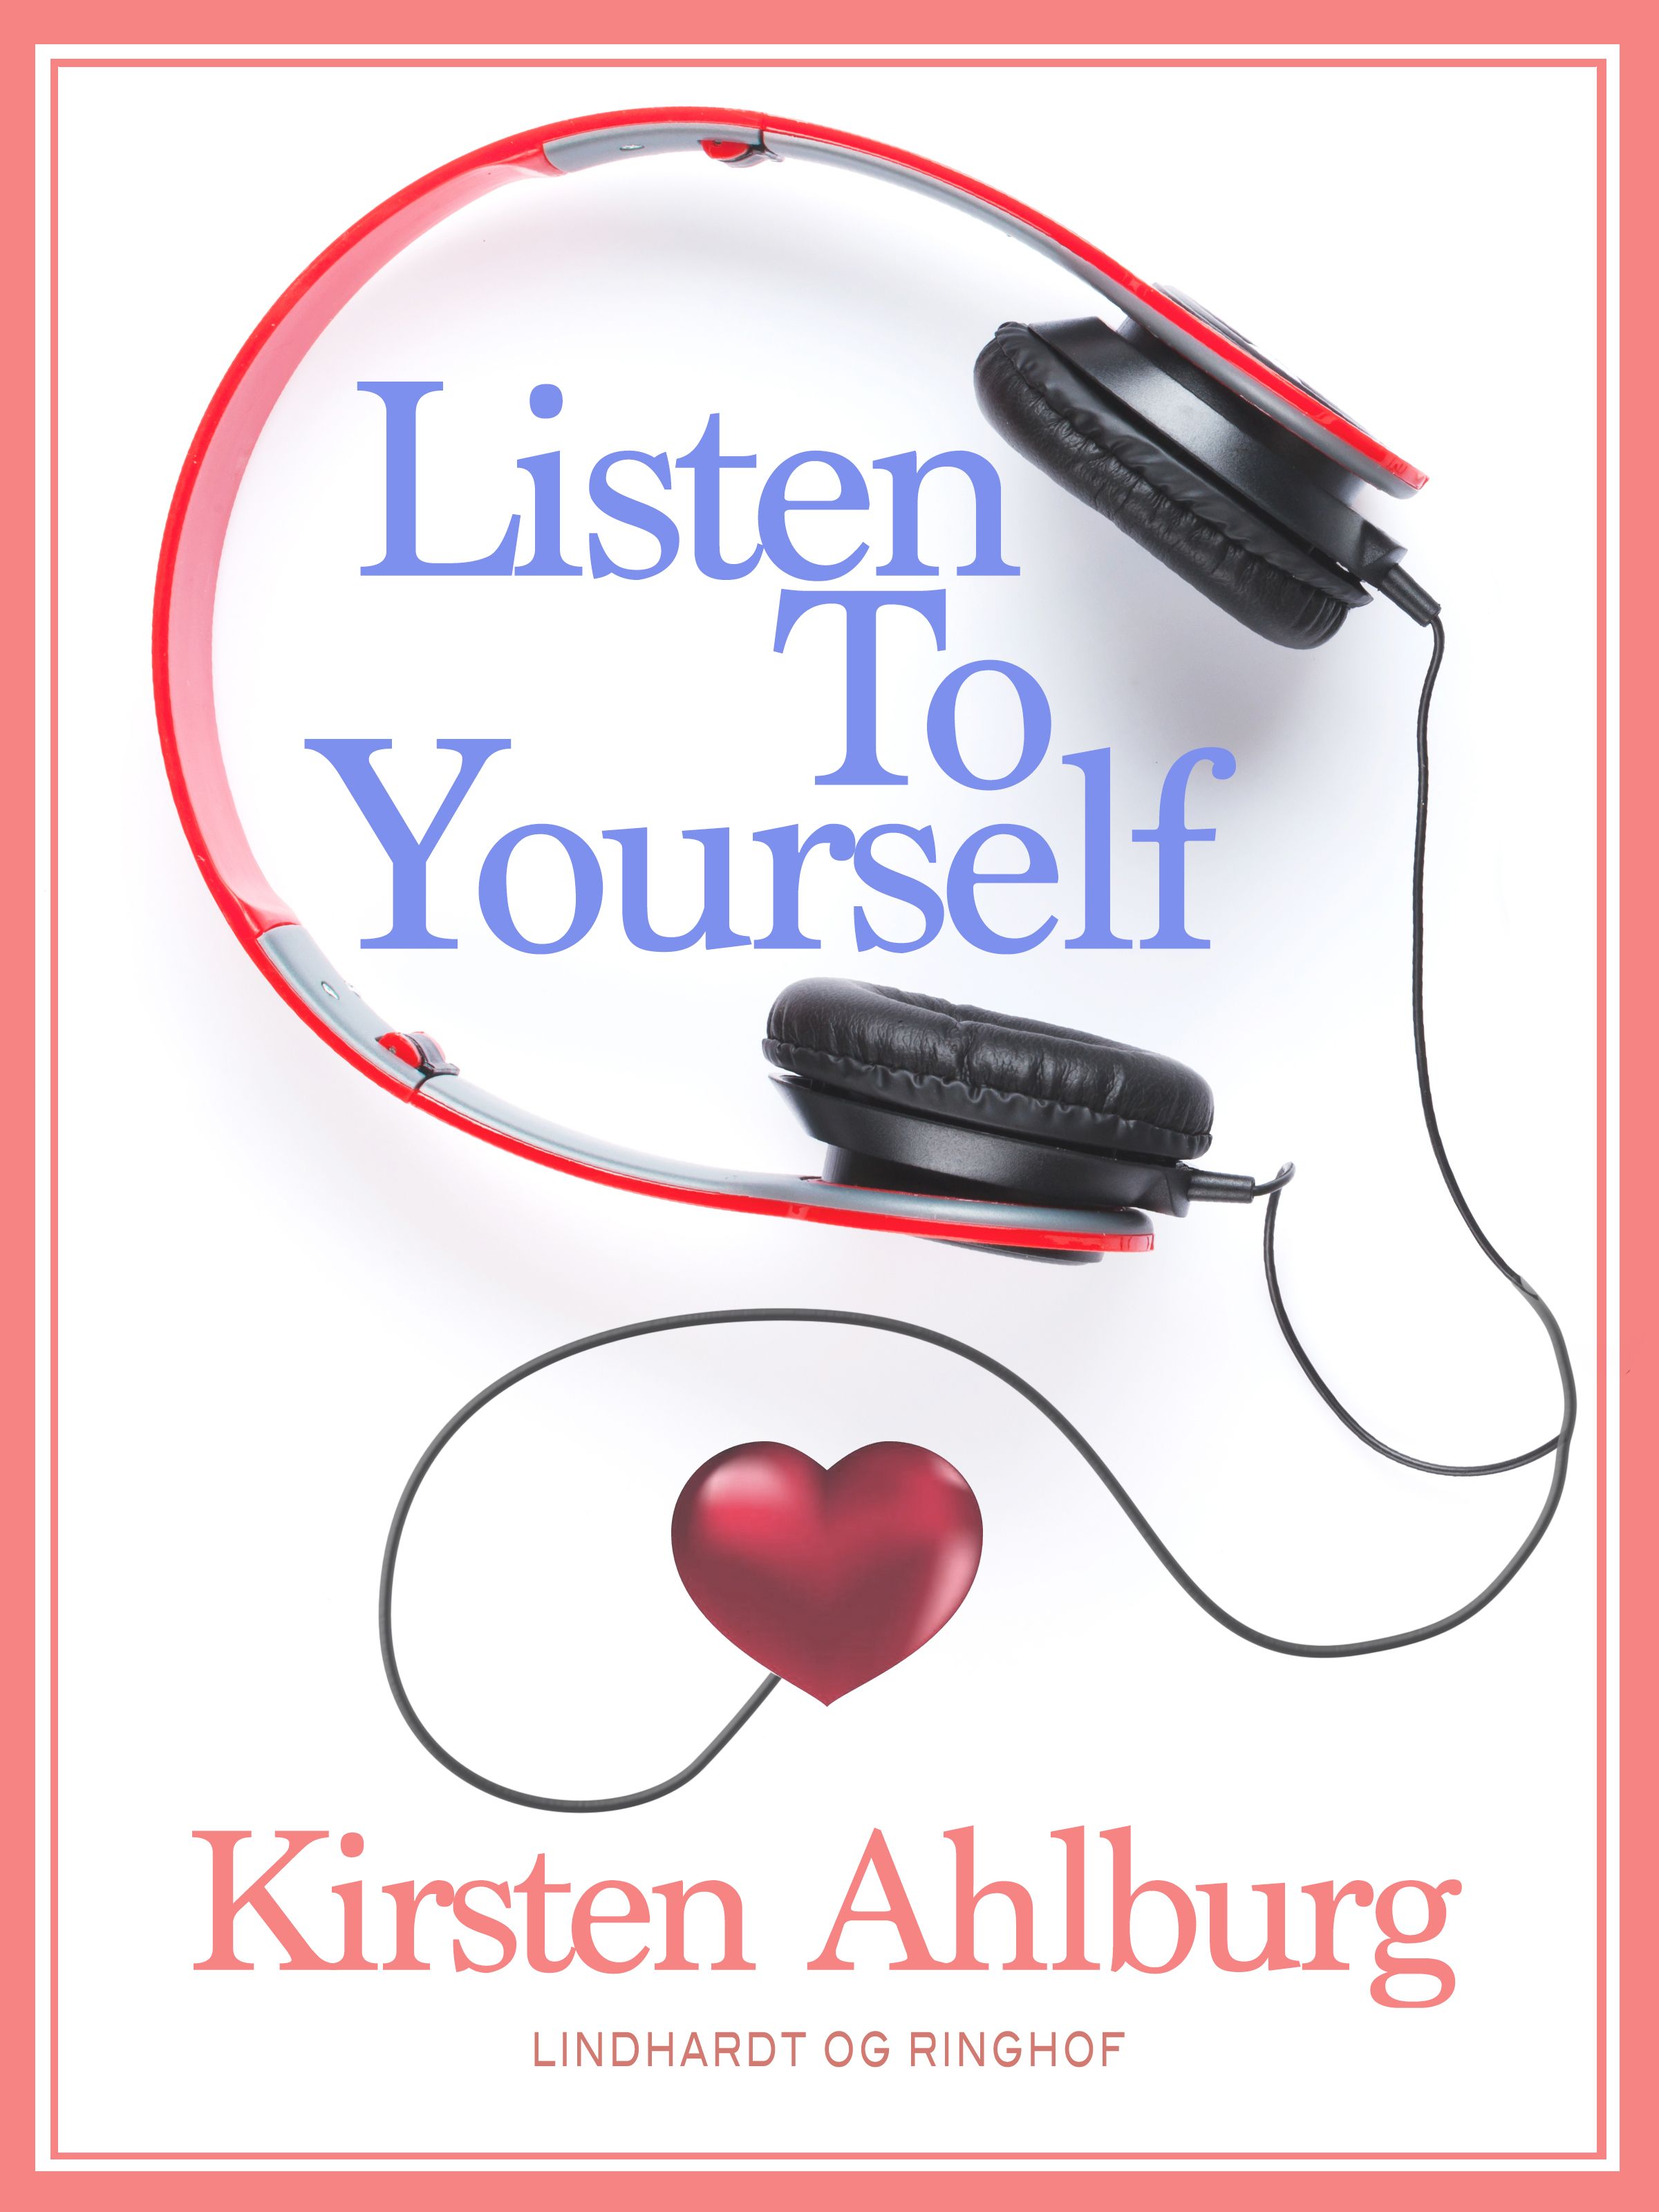 Listen to Yourself, e-bok av Kirsten Ahlburg